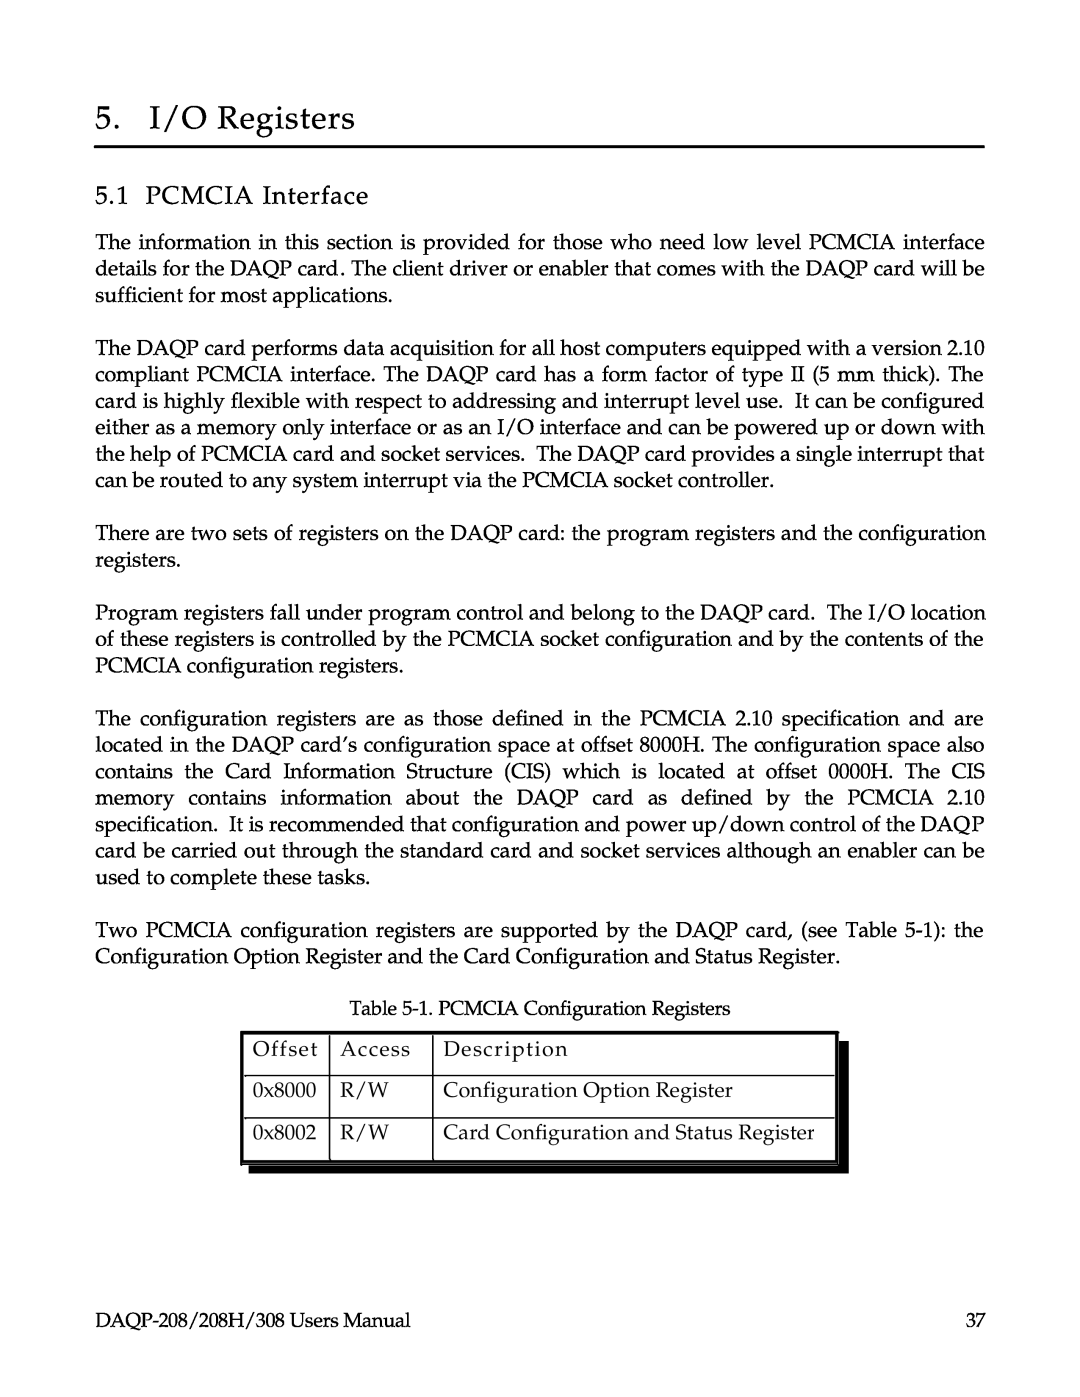 Omega 208H, DAQP-208, 308 user manual 5. I/O Registers, PCMCIA Interface 